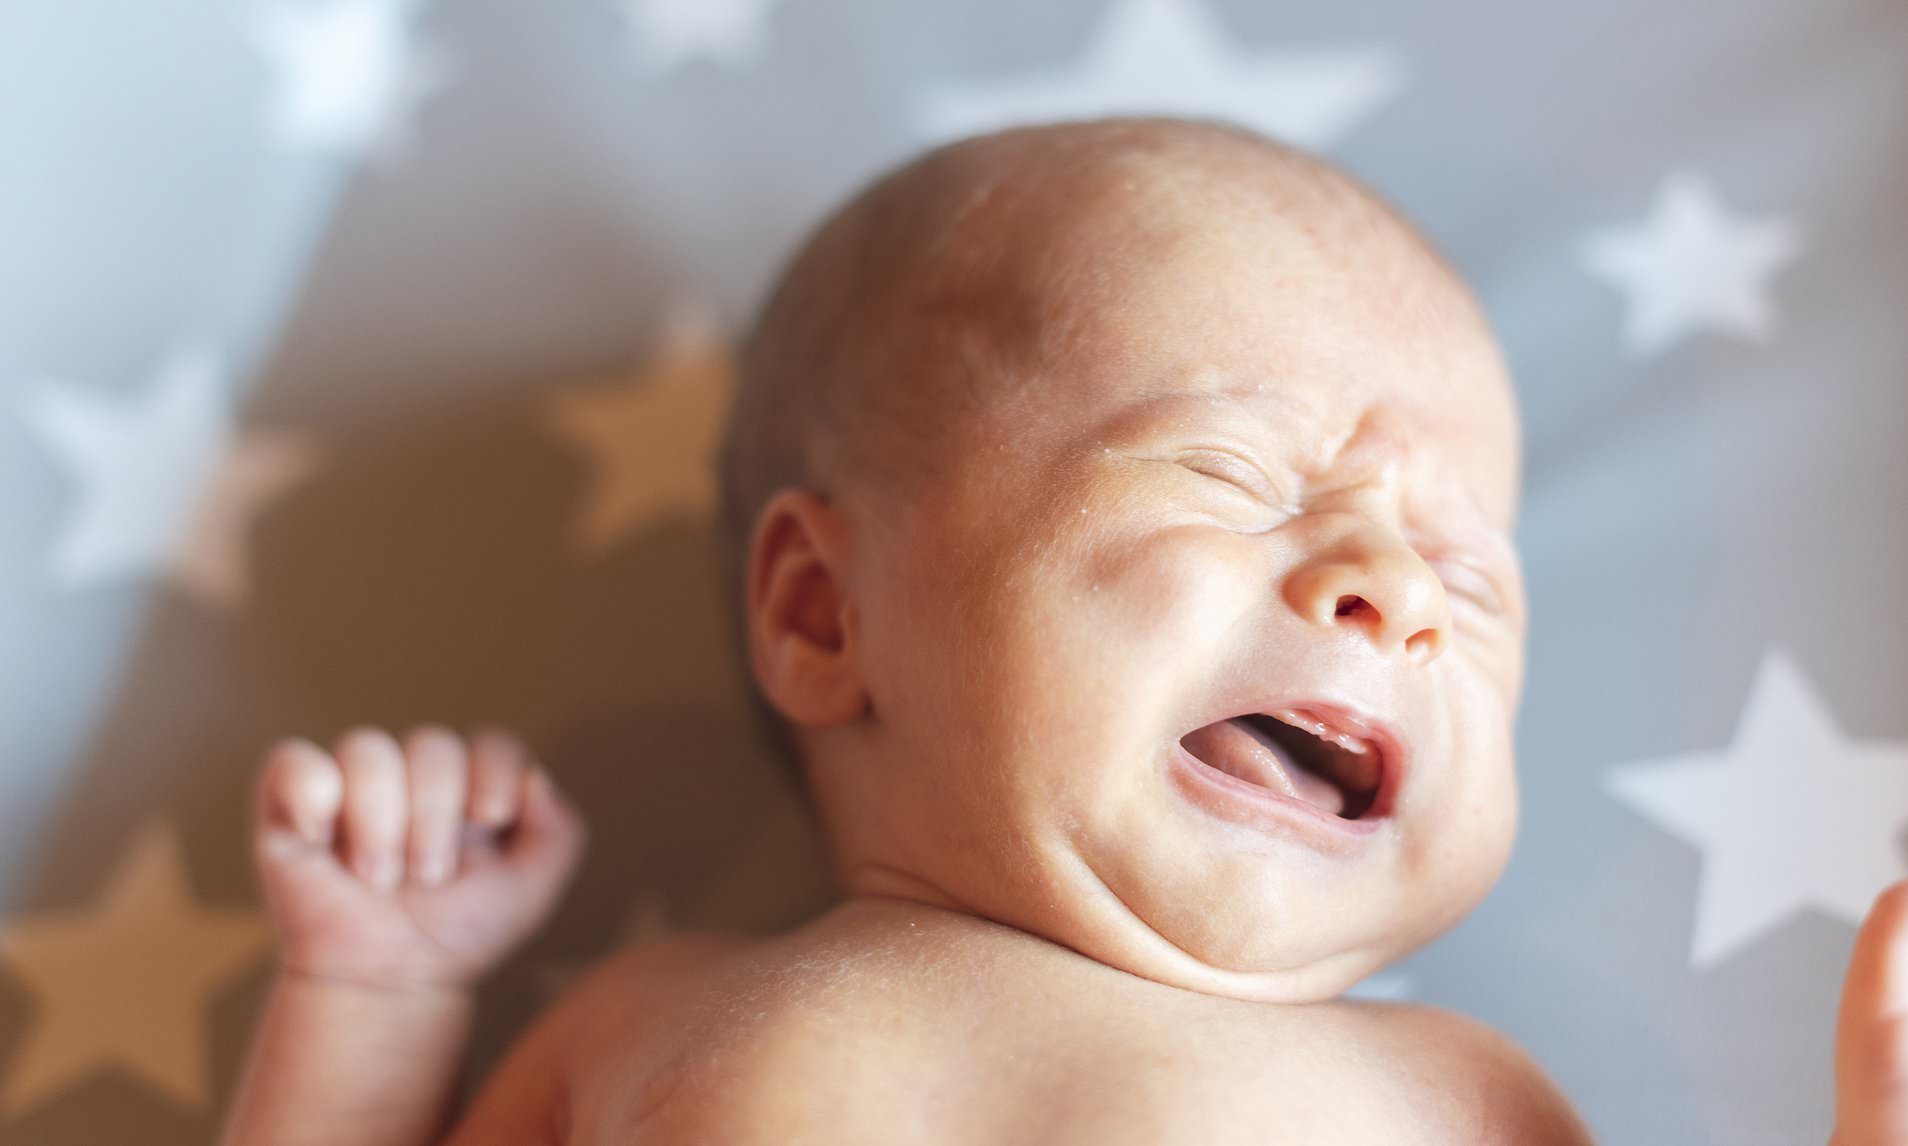 10 أسباب محتملة لبكاء الطفل الرضيع ونصائح لتهدئة طفلك